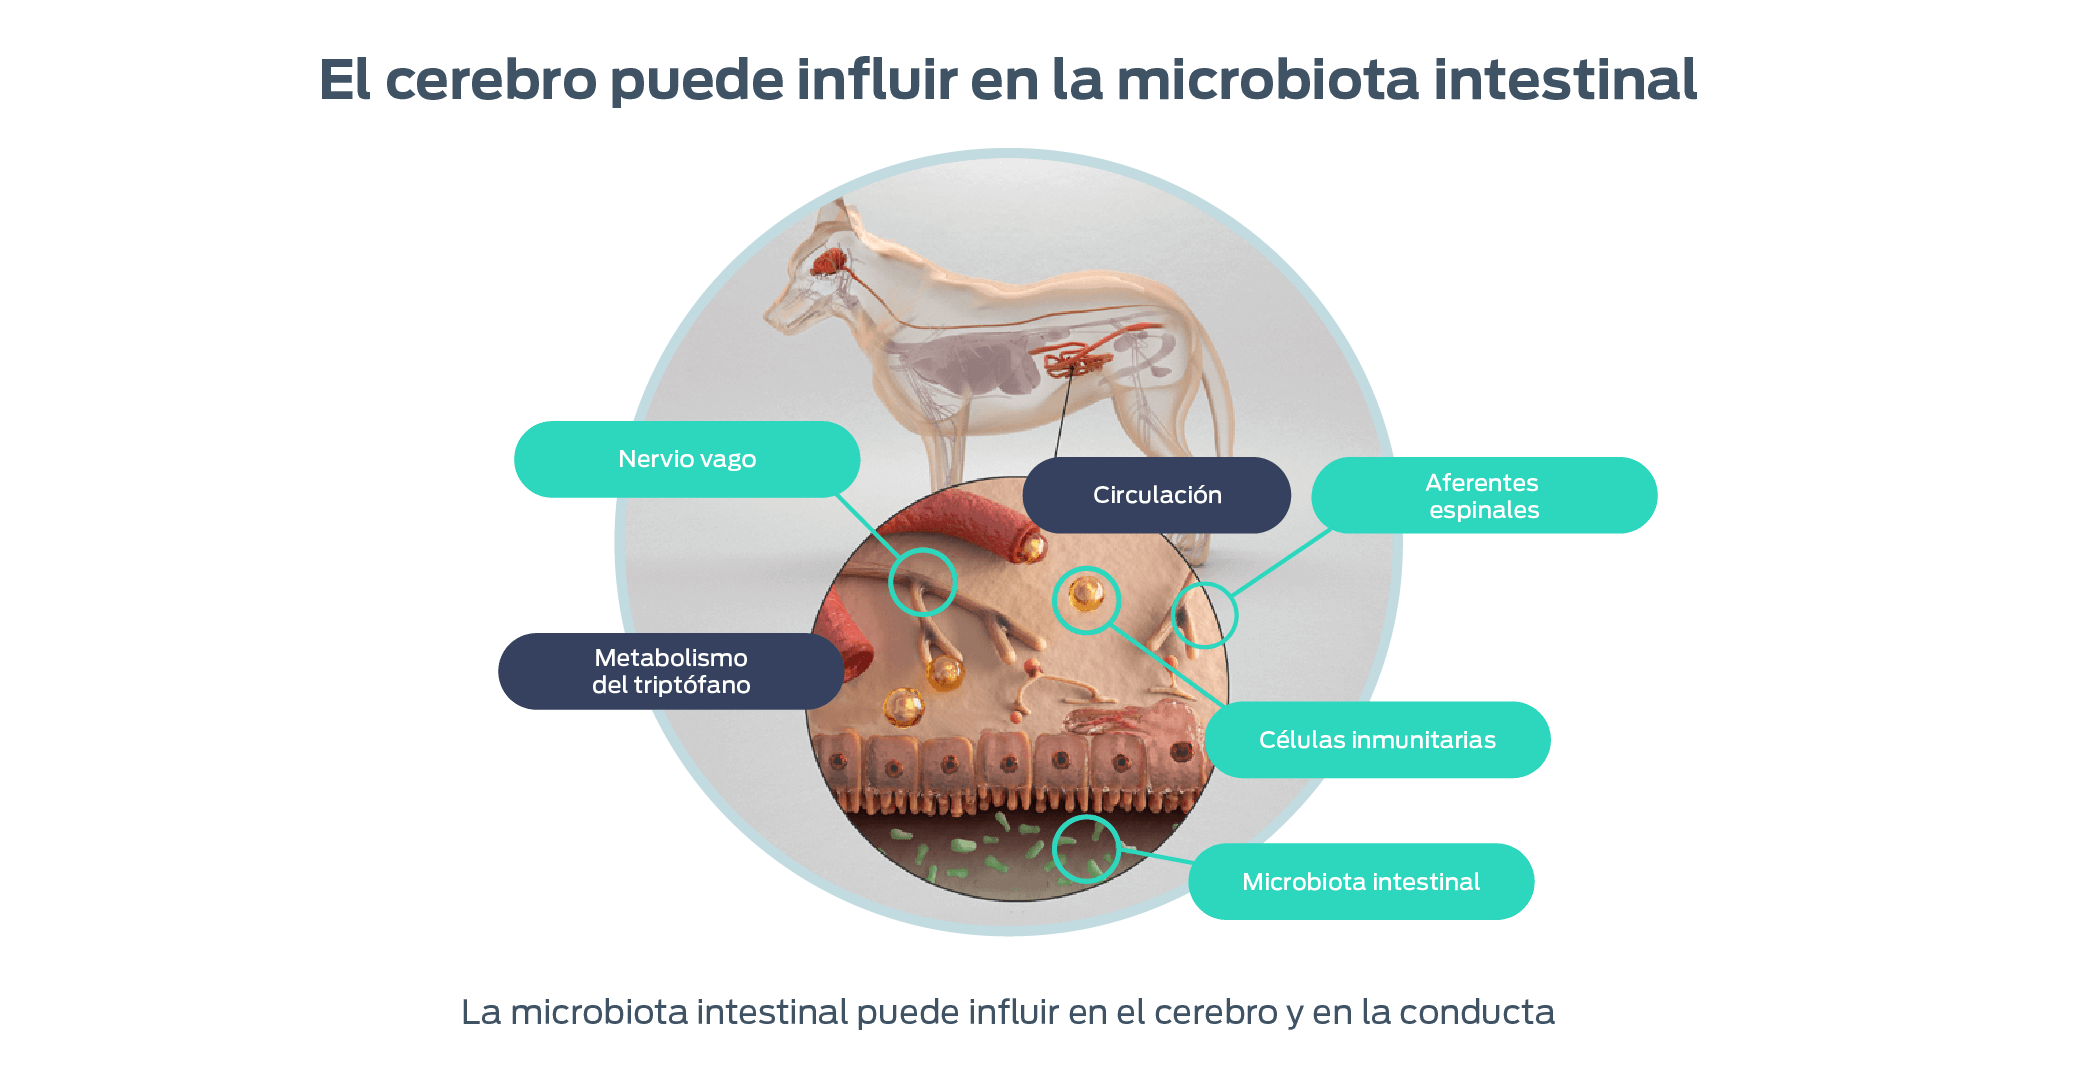 El cerebro puede influir en la microbiota intestinal. Nervio vago, metabolismo del triptofano, circulación, aferentes espinales, celulas inmunitarias, microbiota intestinal. La microbiota intestinal puede influir en el cerebro y en la conducta.